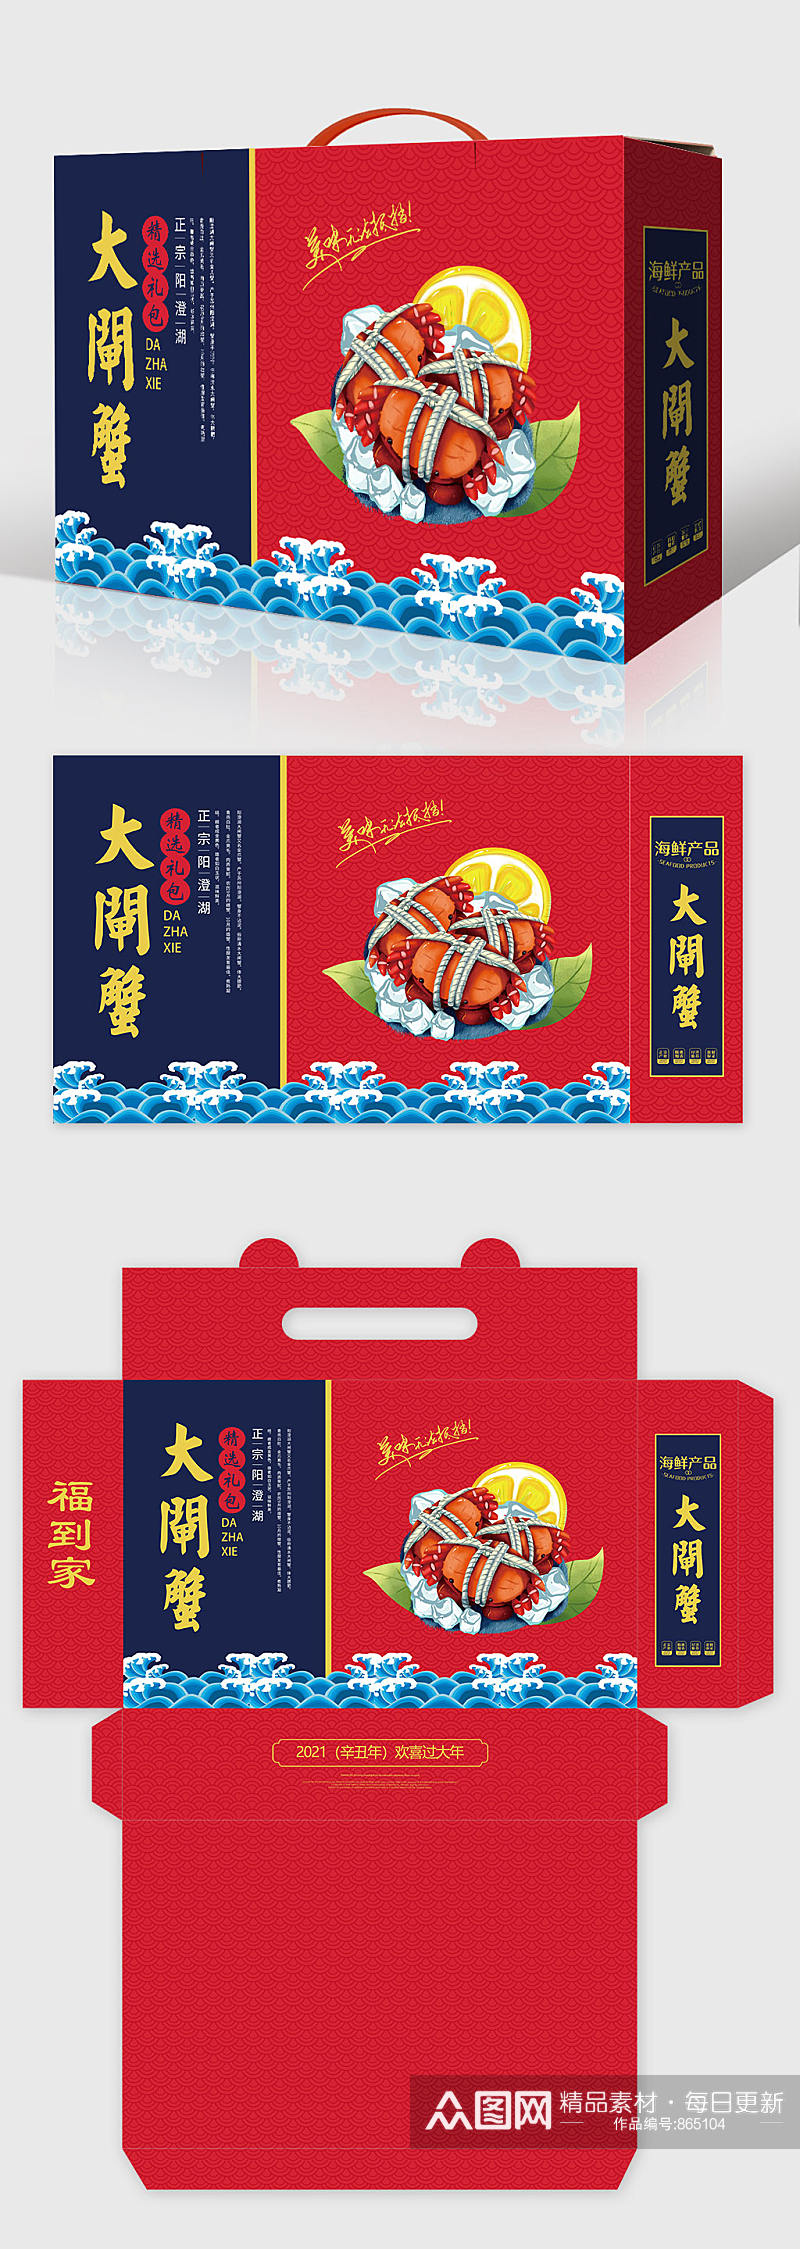 高档新年礼盒海鲜大闸蟹年货包装设计素材